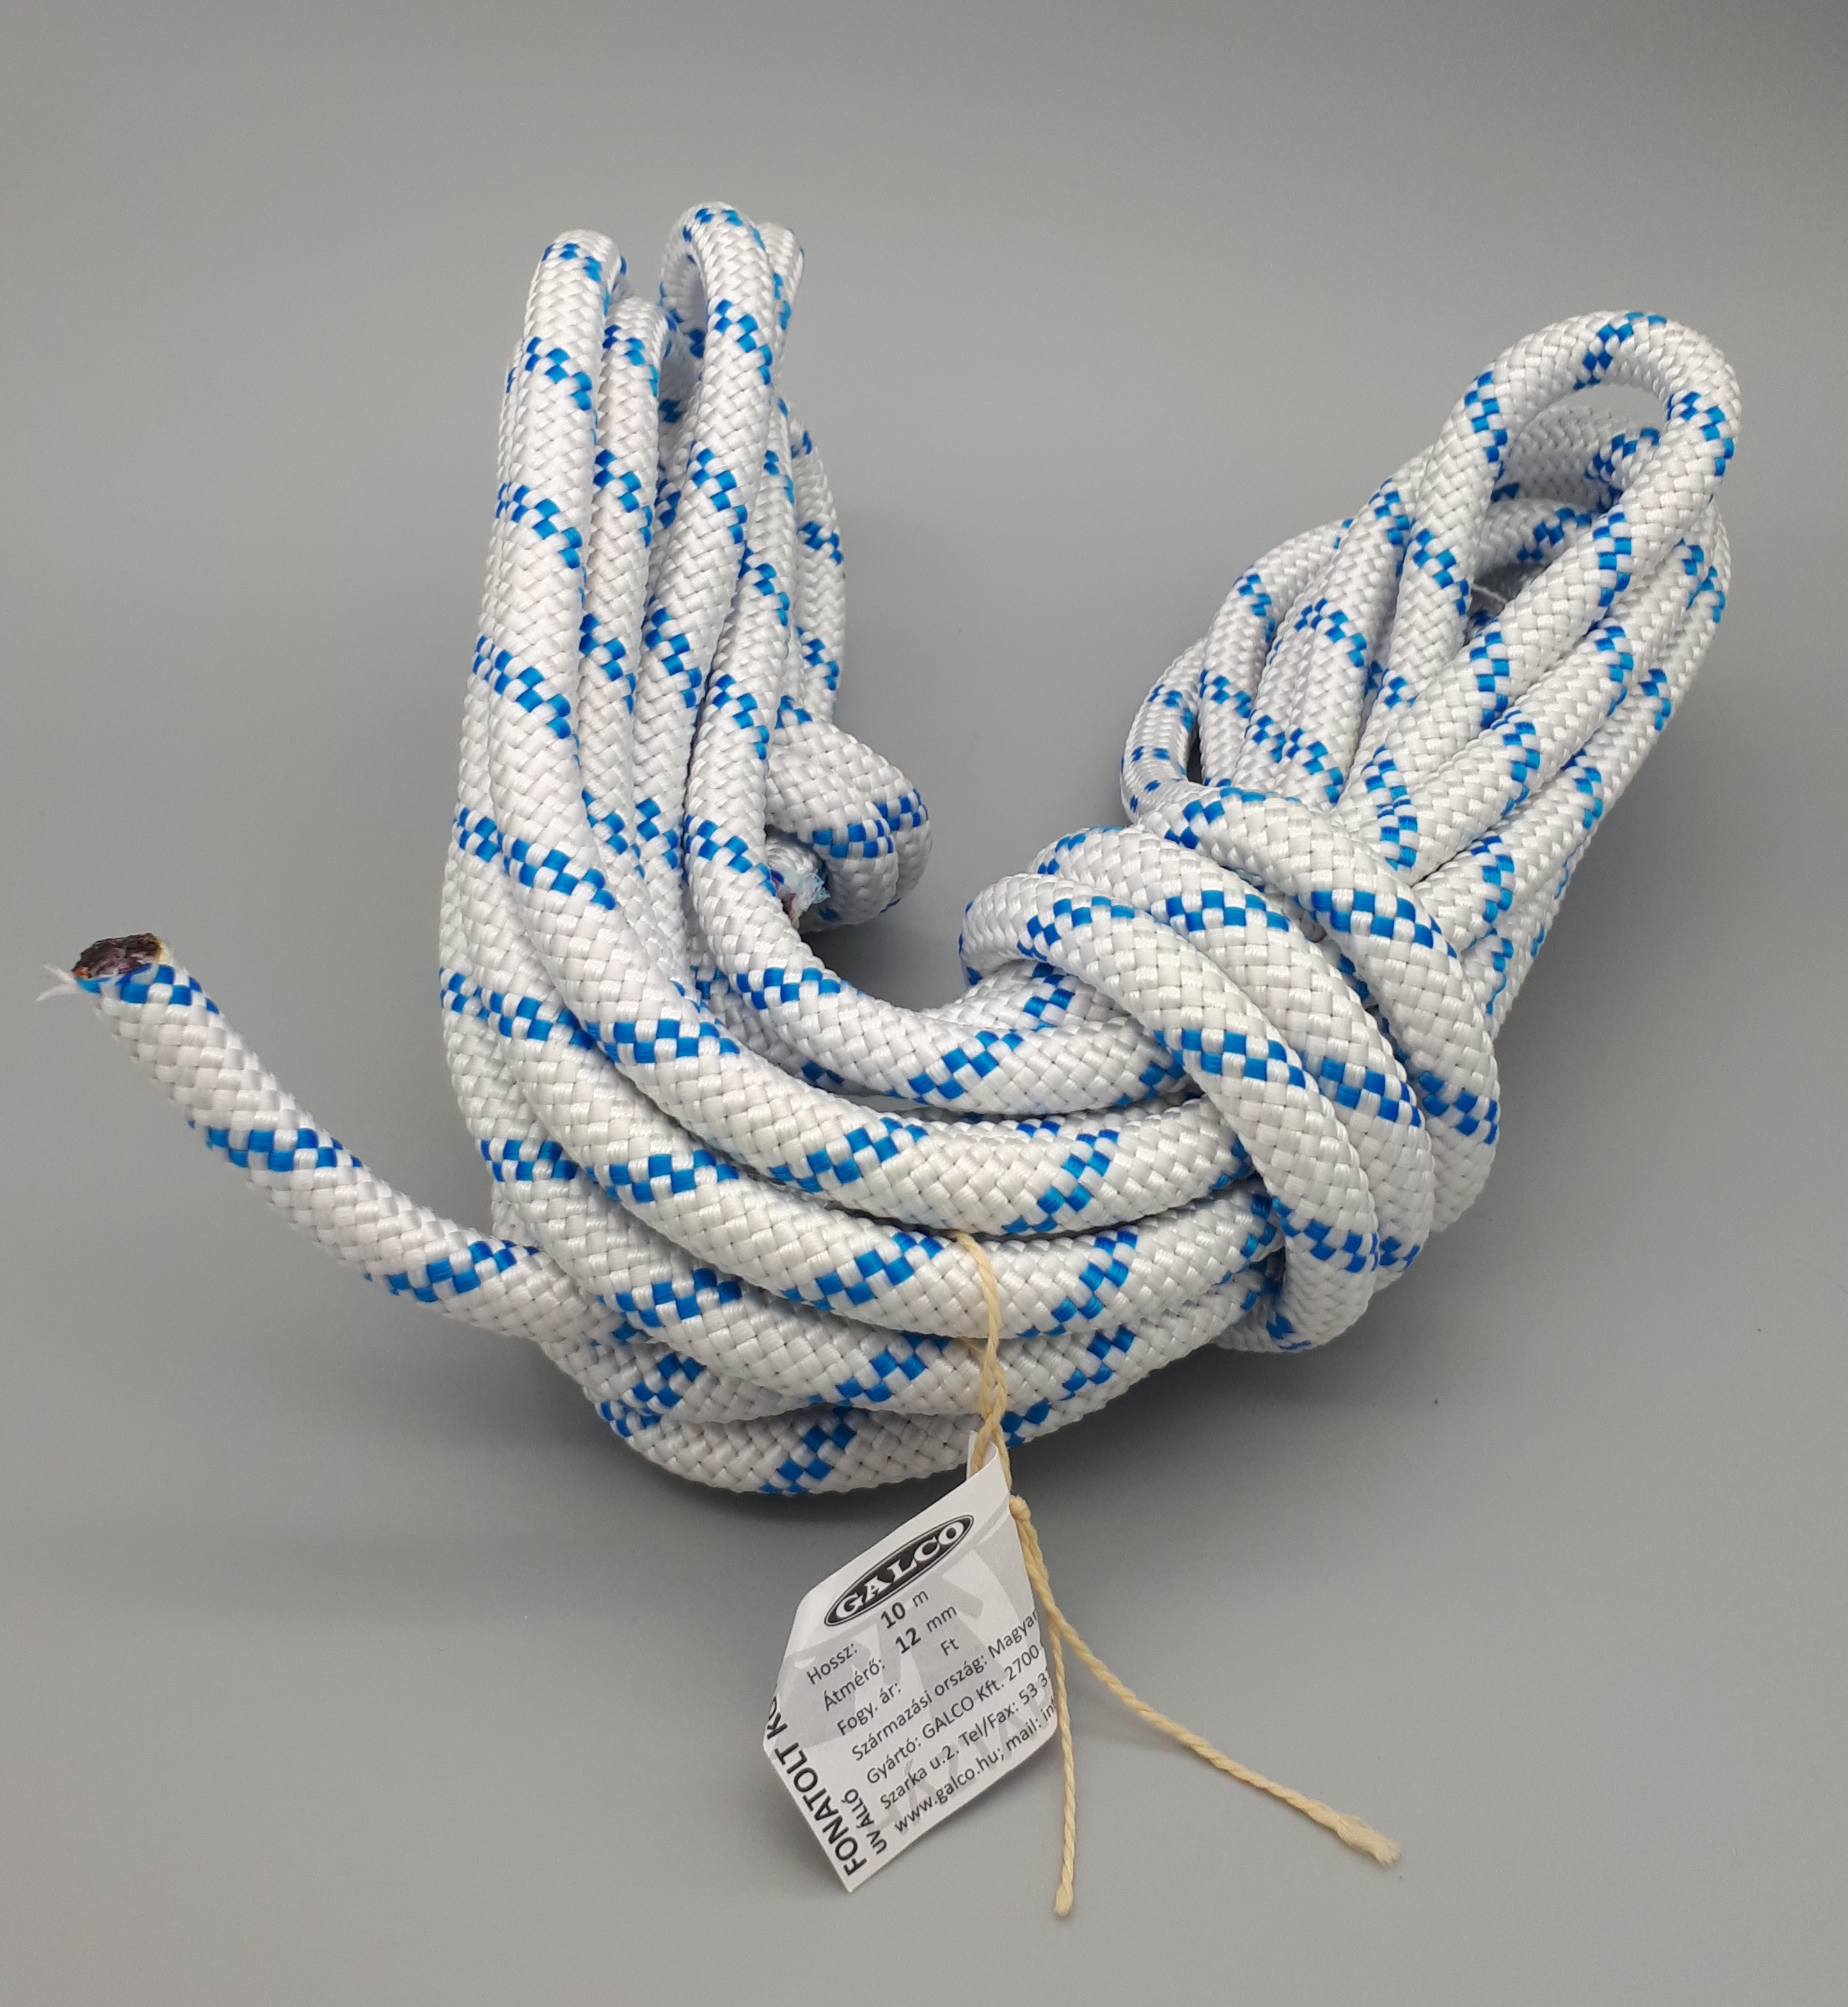 Cut rope 12 mm diameter/10 m